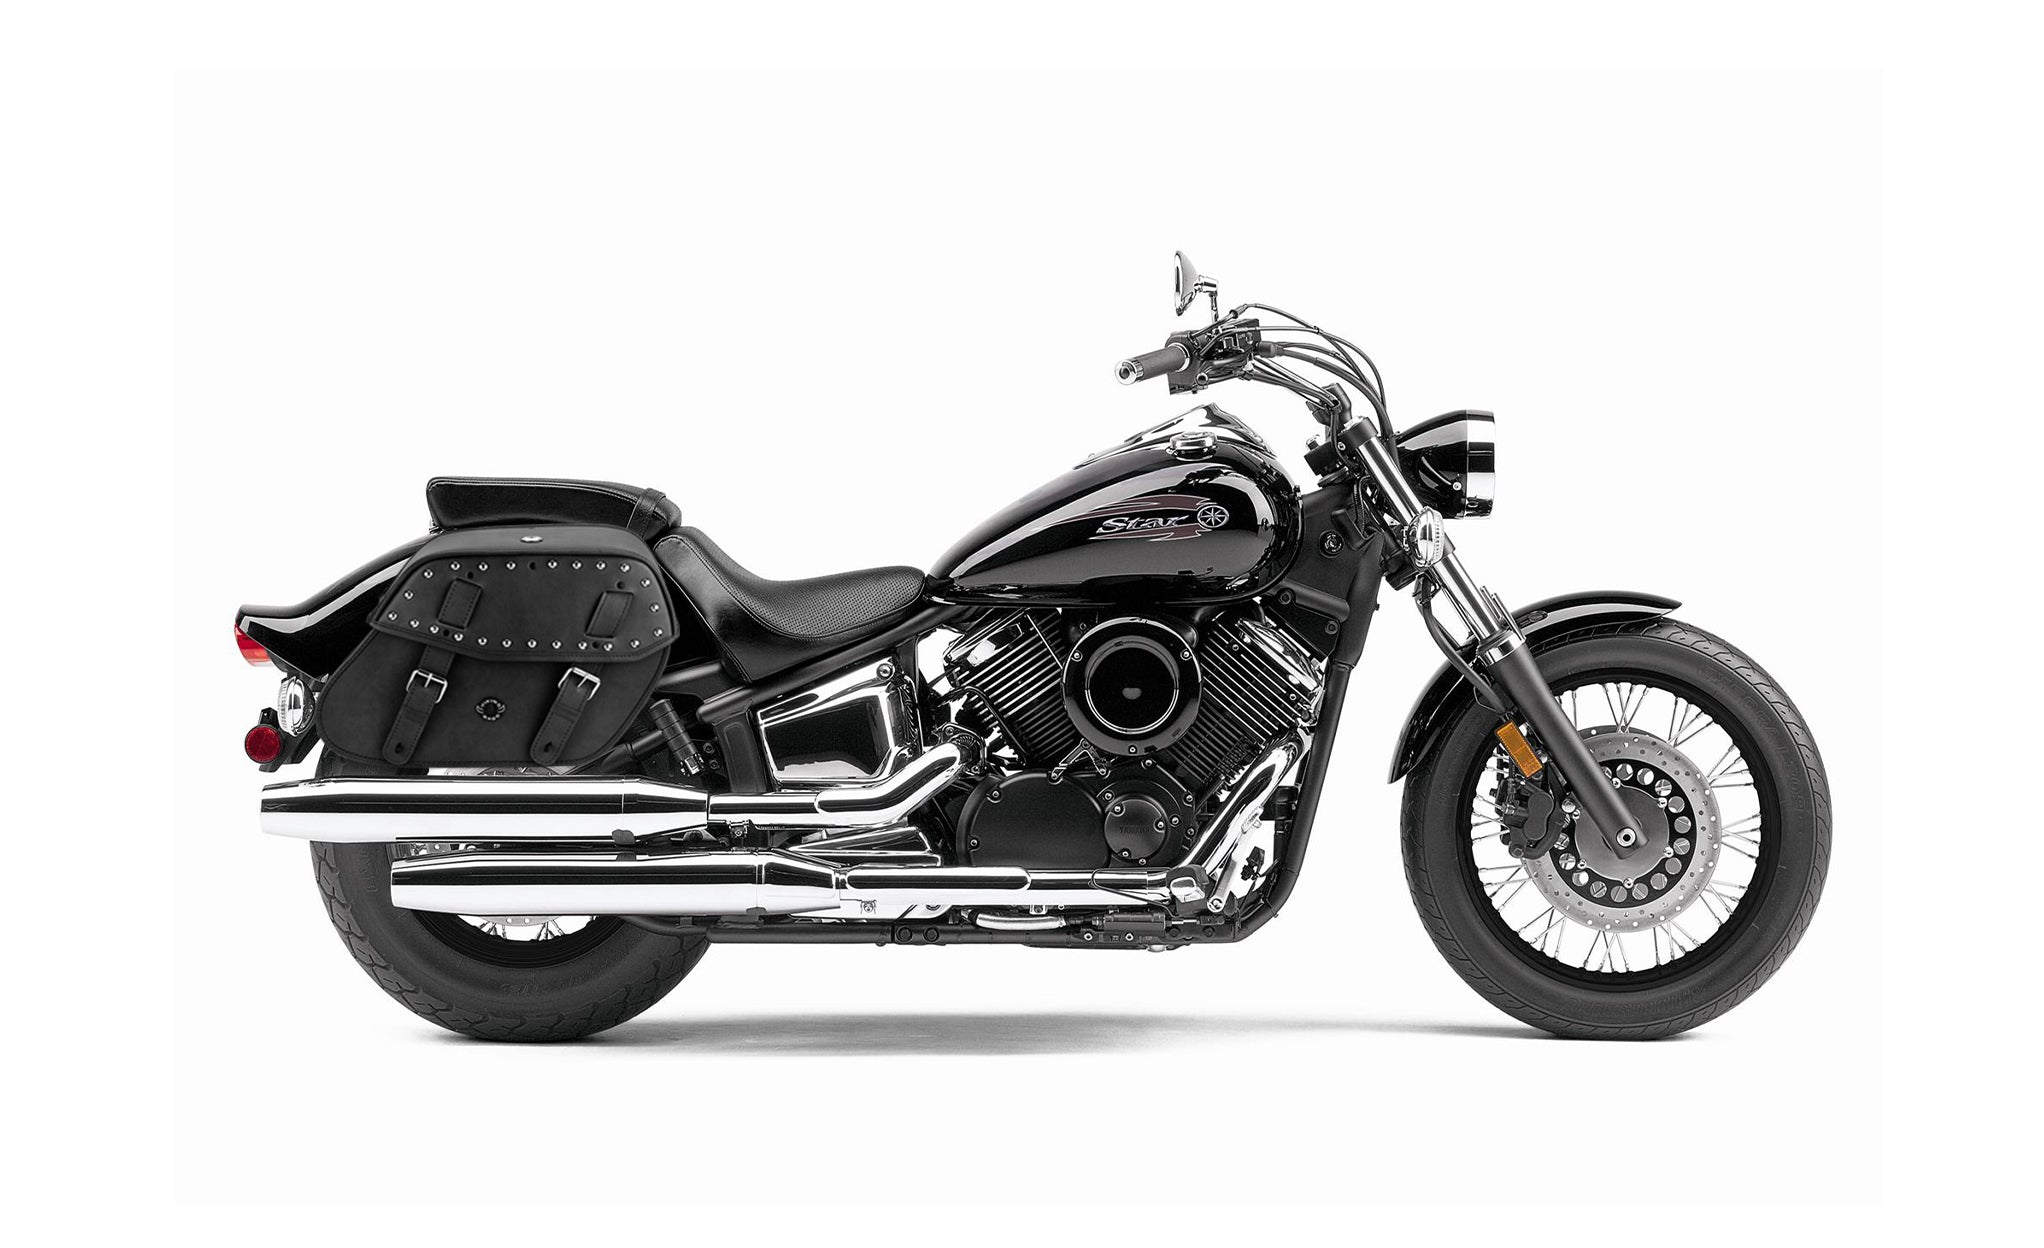 Viking Odin Large Yamaha V Star 1100 Custom Xvs11T Leather Studded Motorcycle Saddlebags on Bike Photo @expand